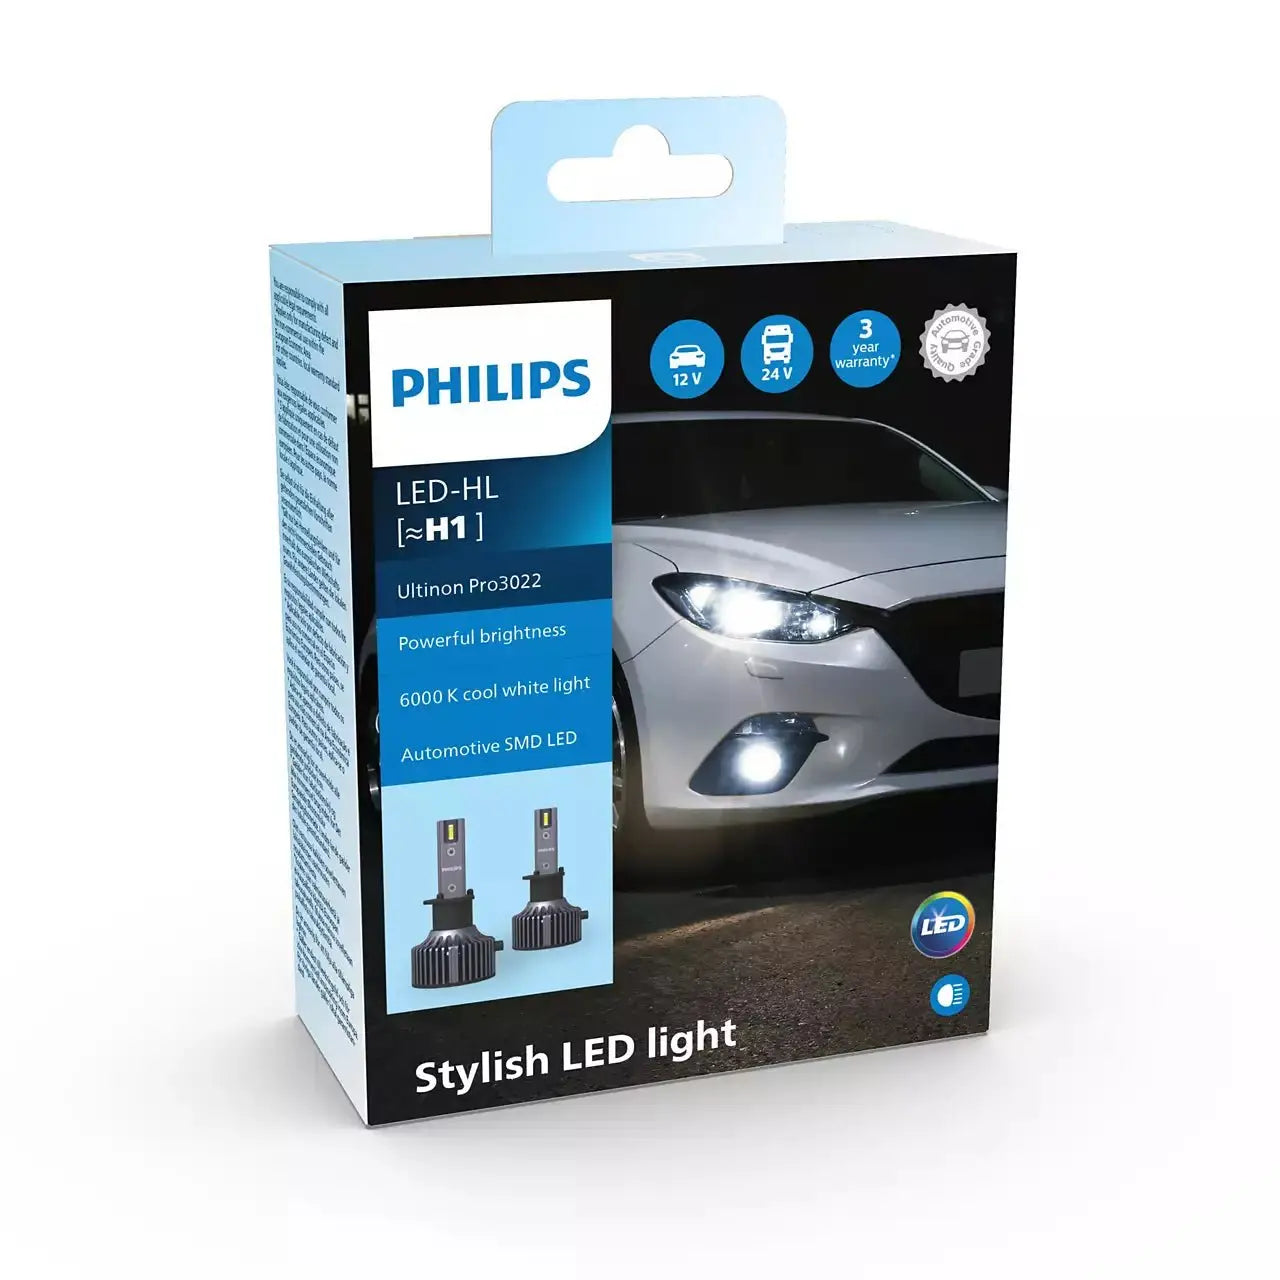 [~H1] HL Ultinon Pro3022 LED 12V&24V 6000K 2 St. Philips - Samsuns Group